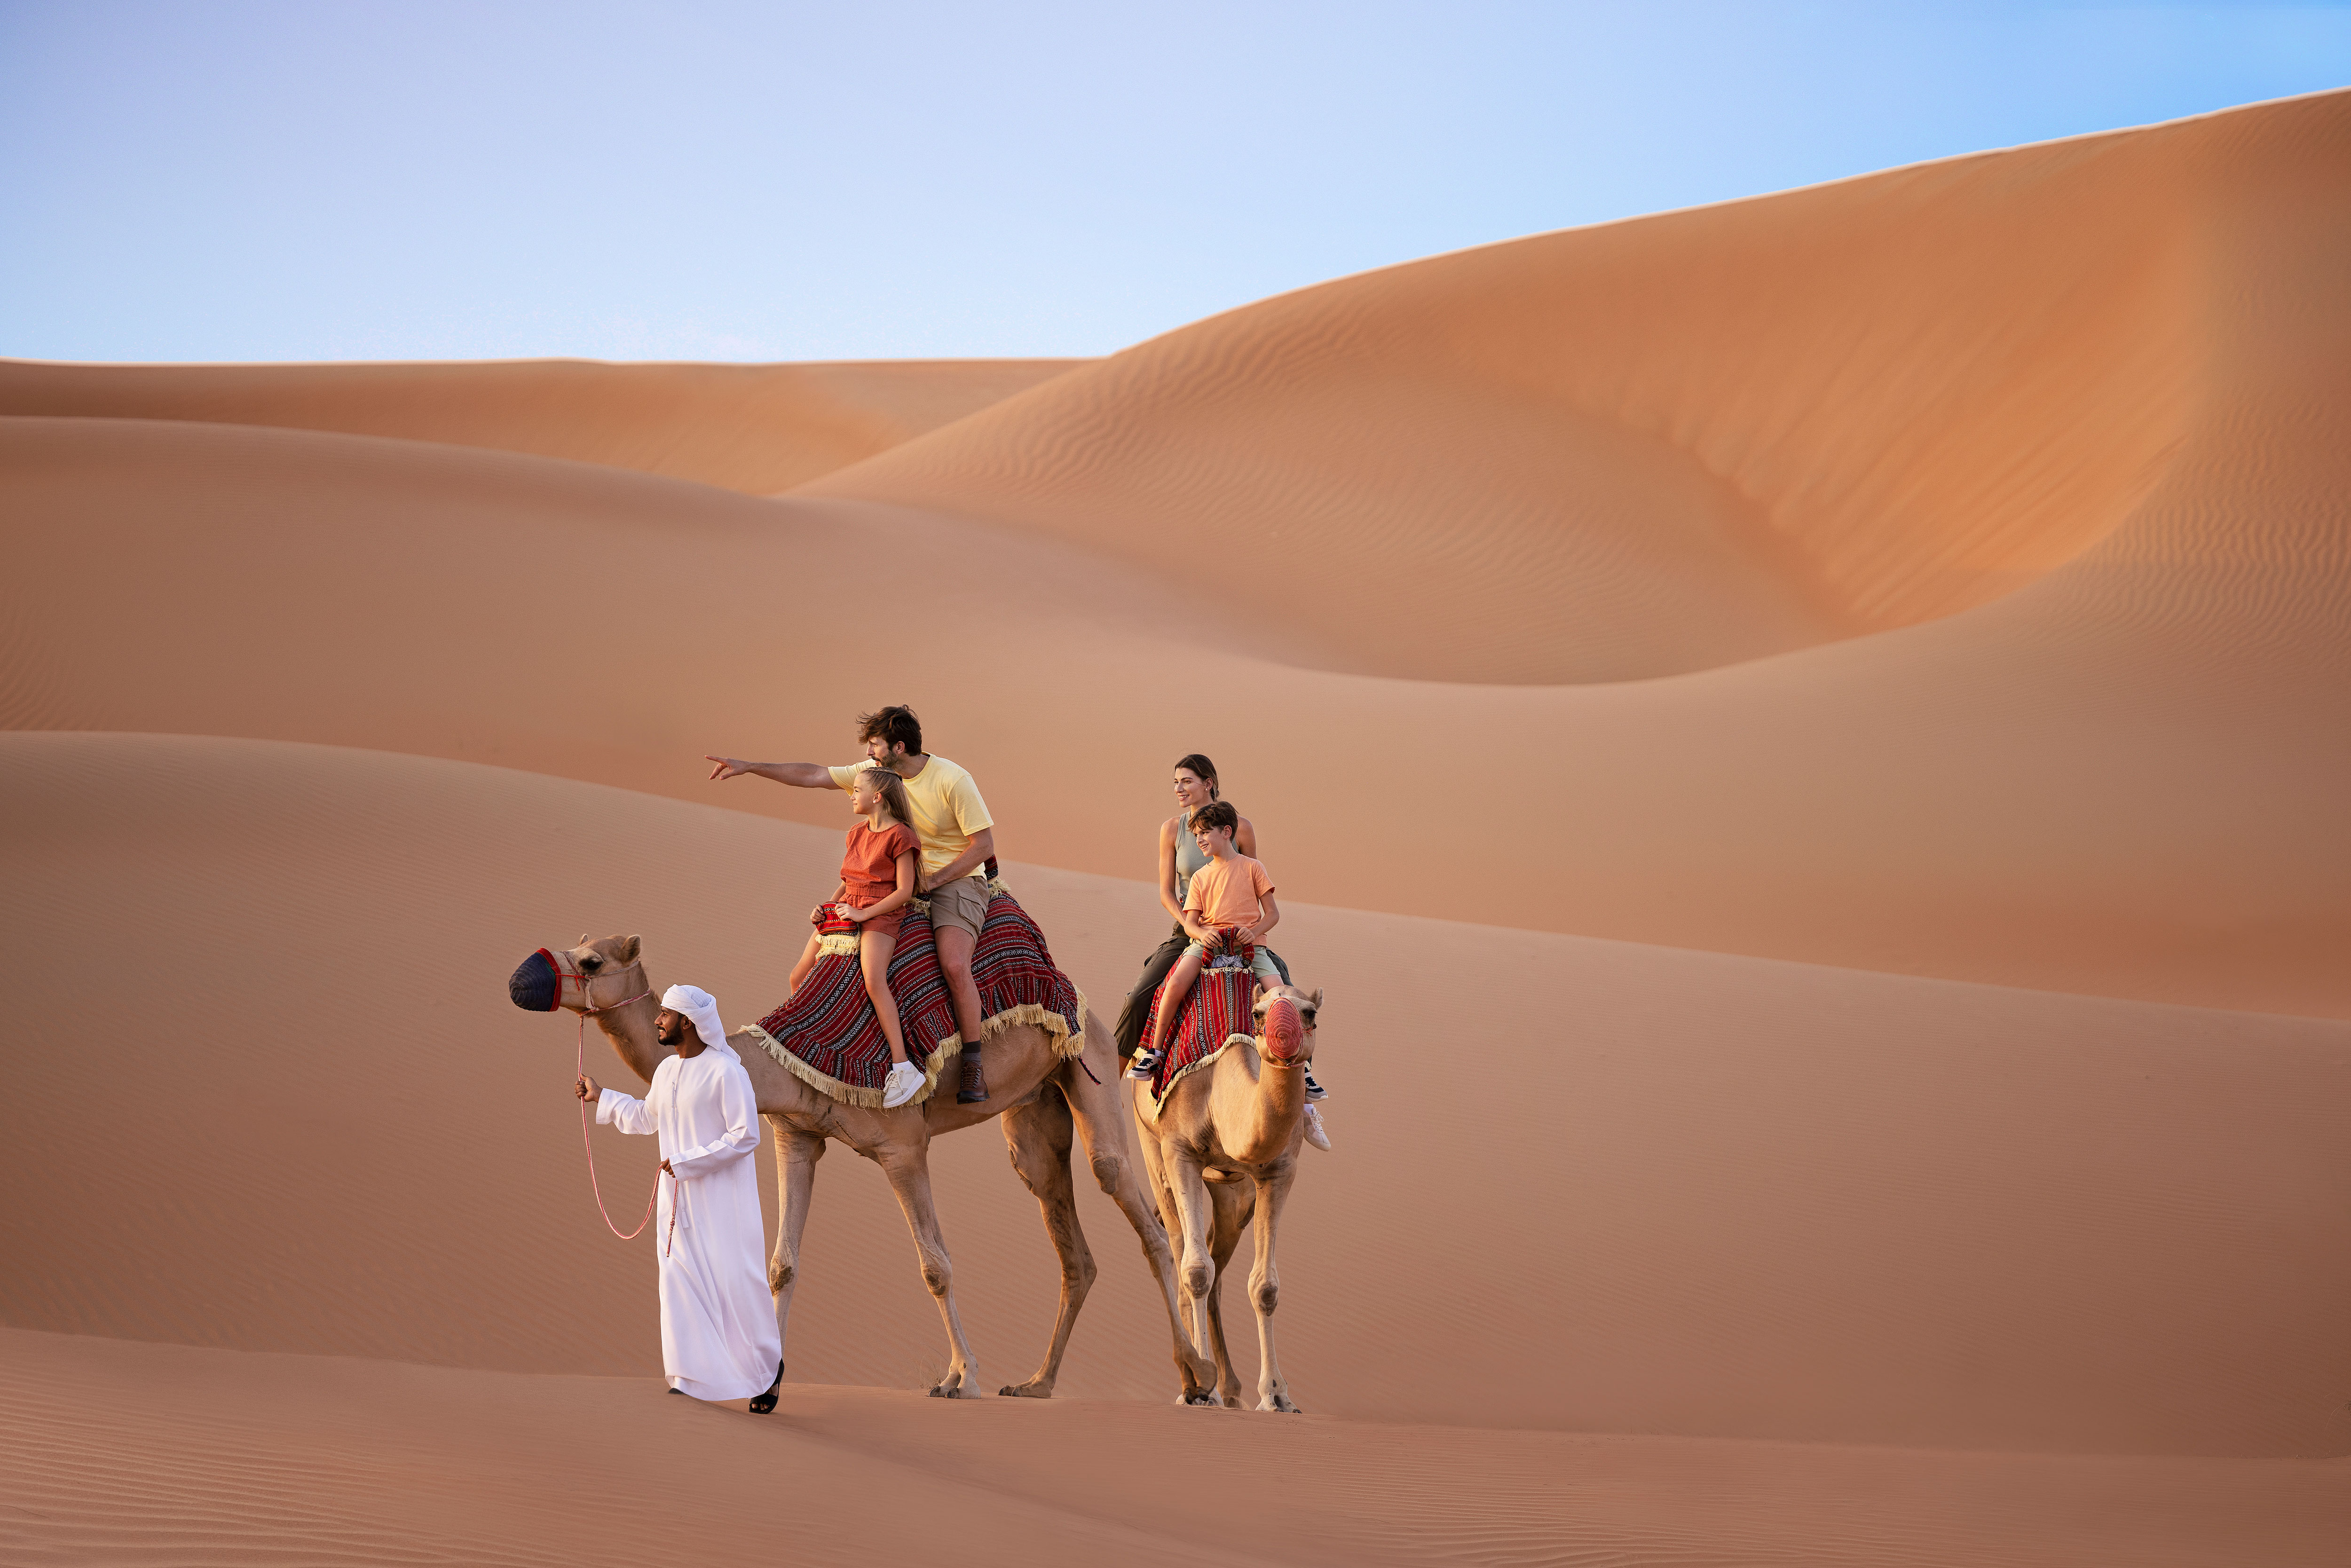 مرشد سياحي يقود جملين يركبهما عائلة من أربع أفراد وسط الكثبان الرملية في أبوظبي